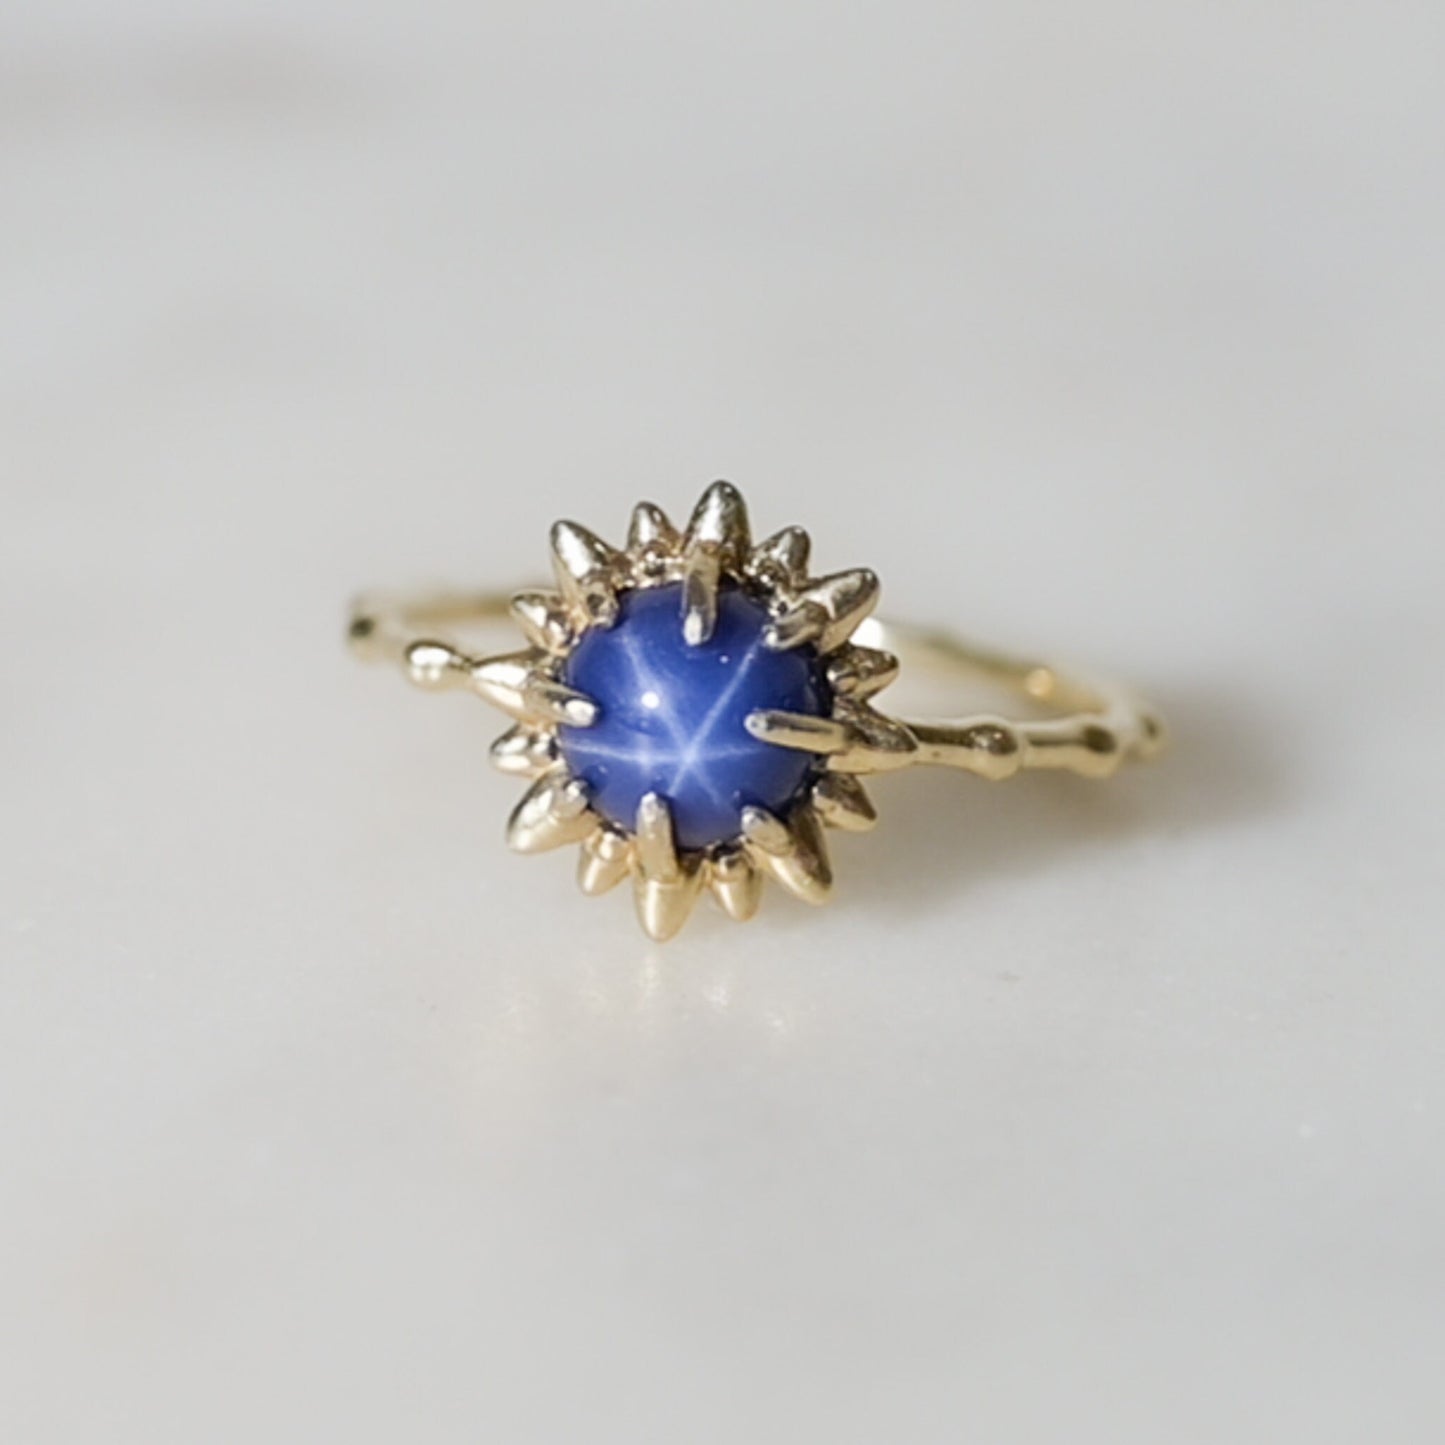 Sunburst Cat's Eye Sapphire Ring